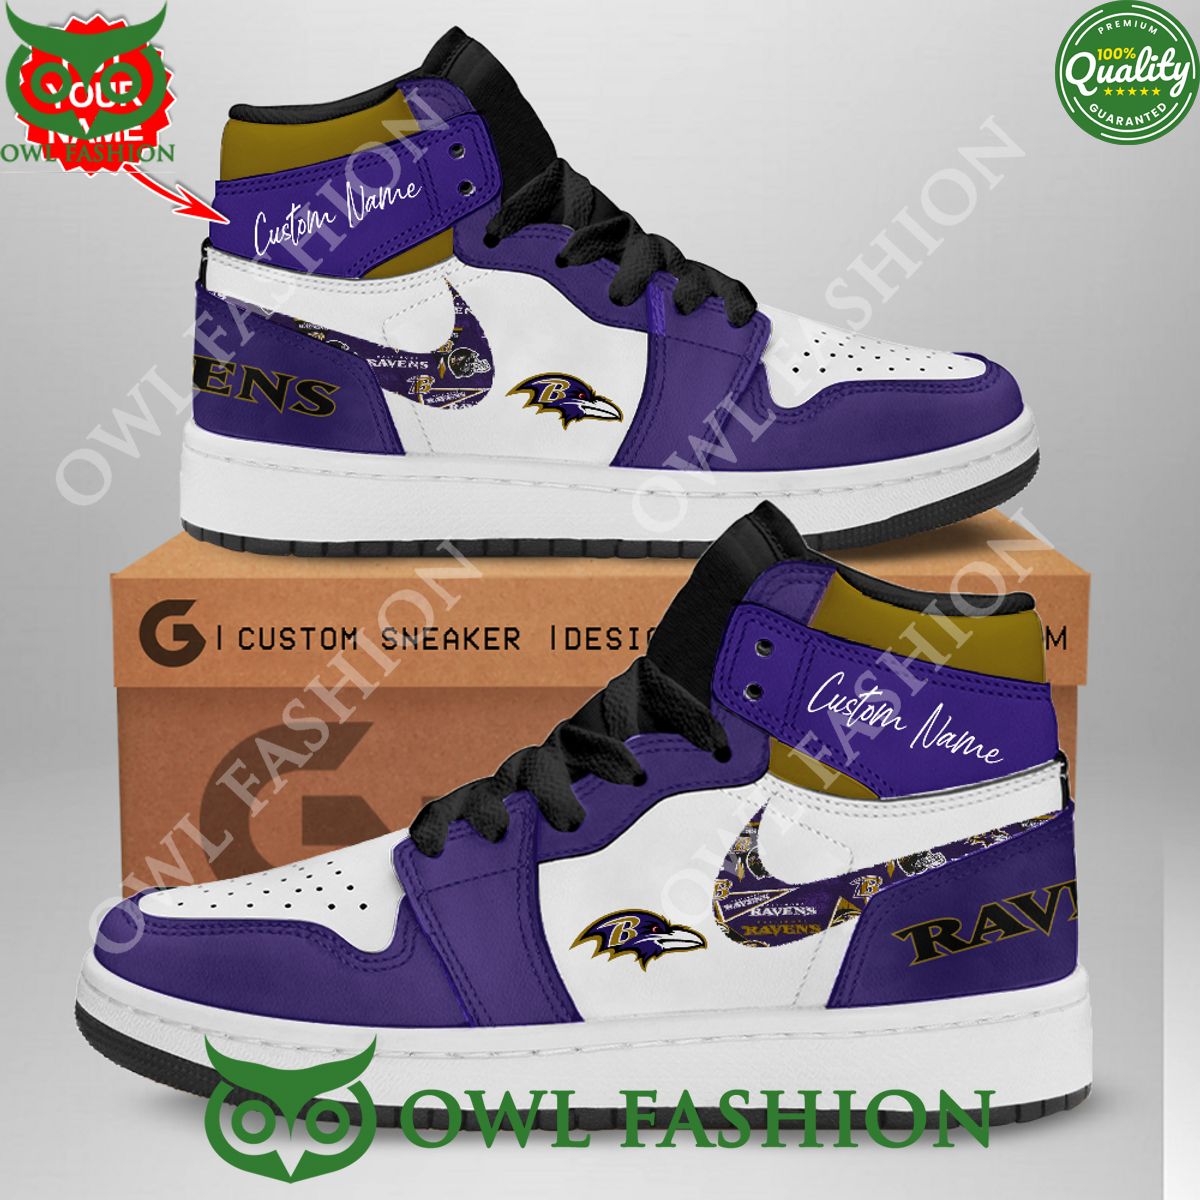 Baltimore Ravens NFL Air Jordan High Top Sneakers Nice elegant click